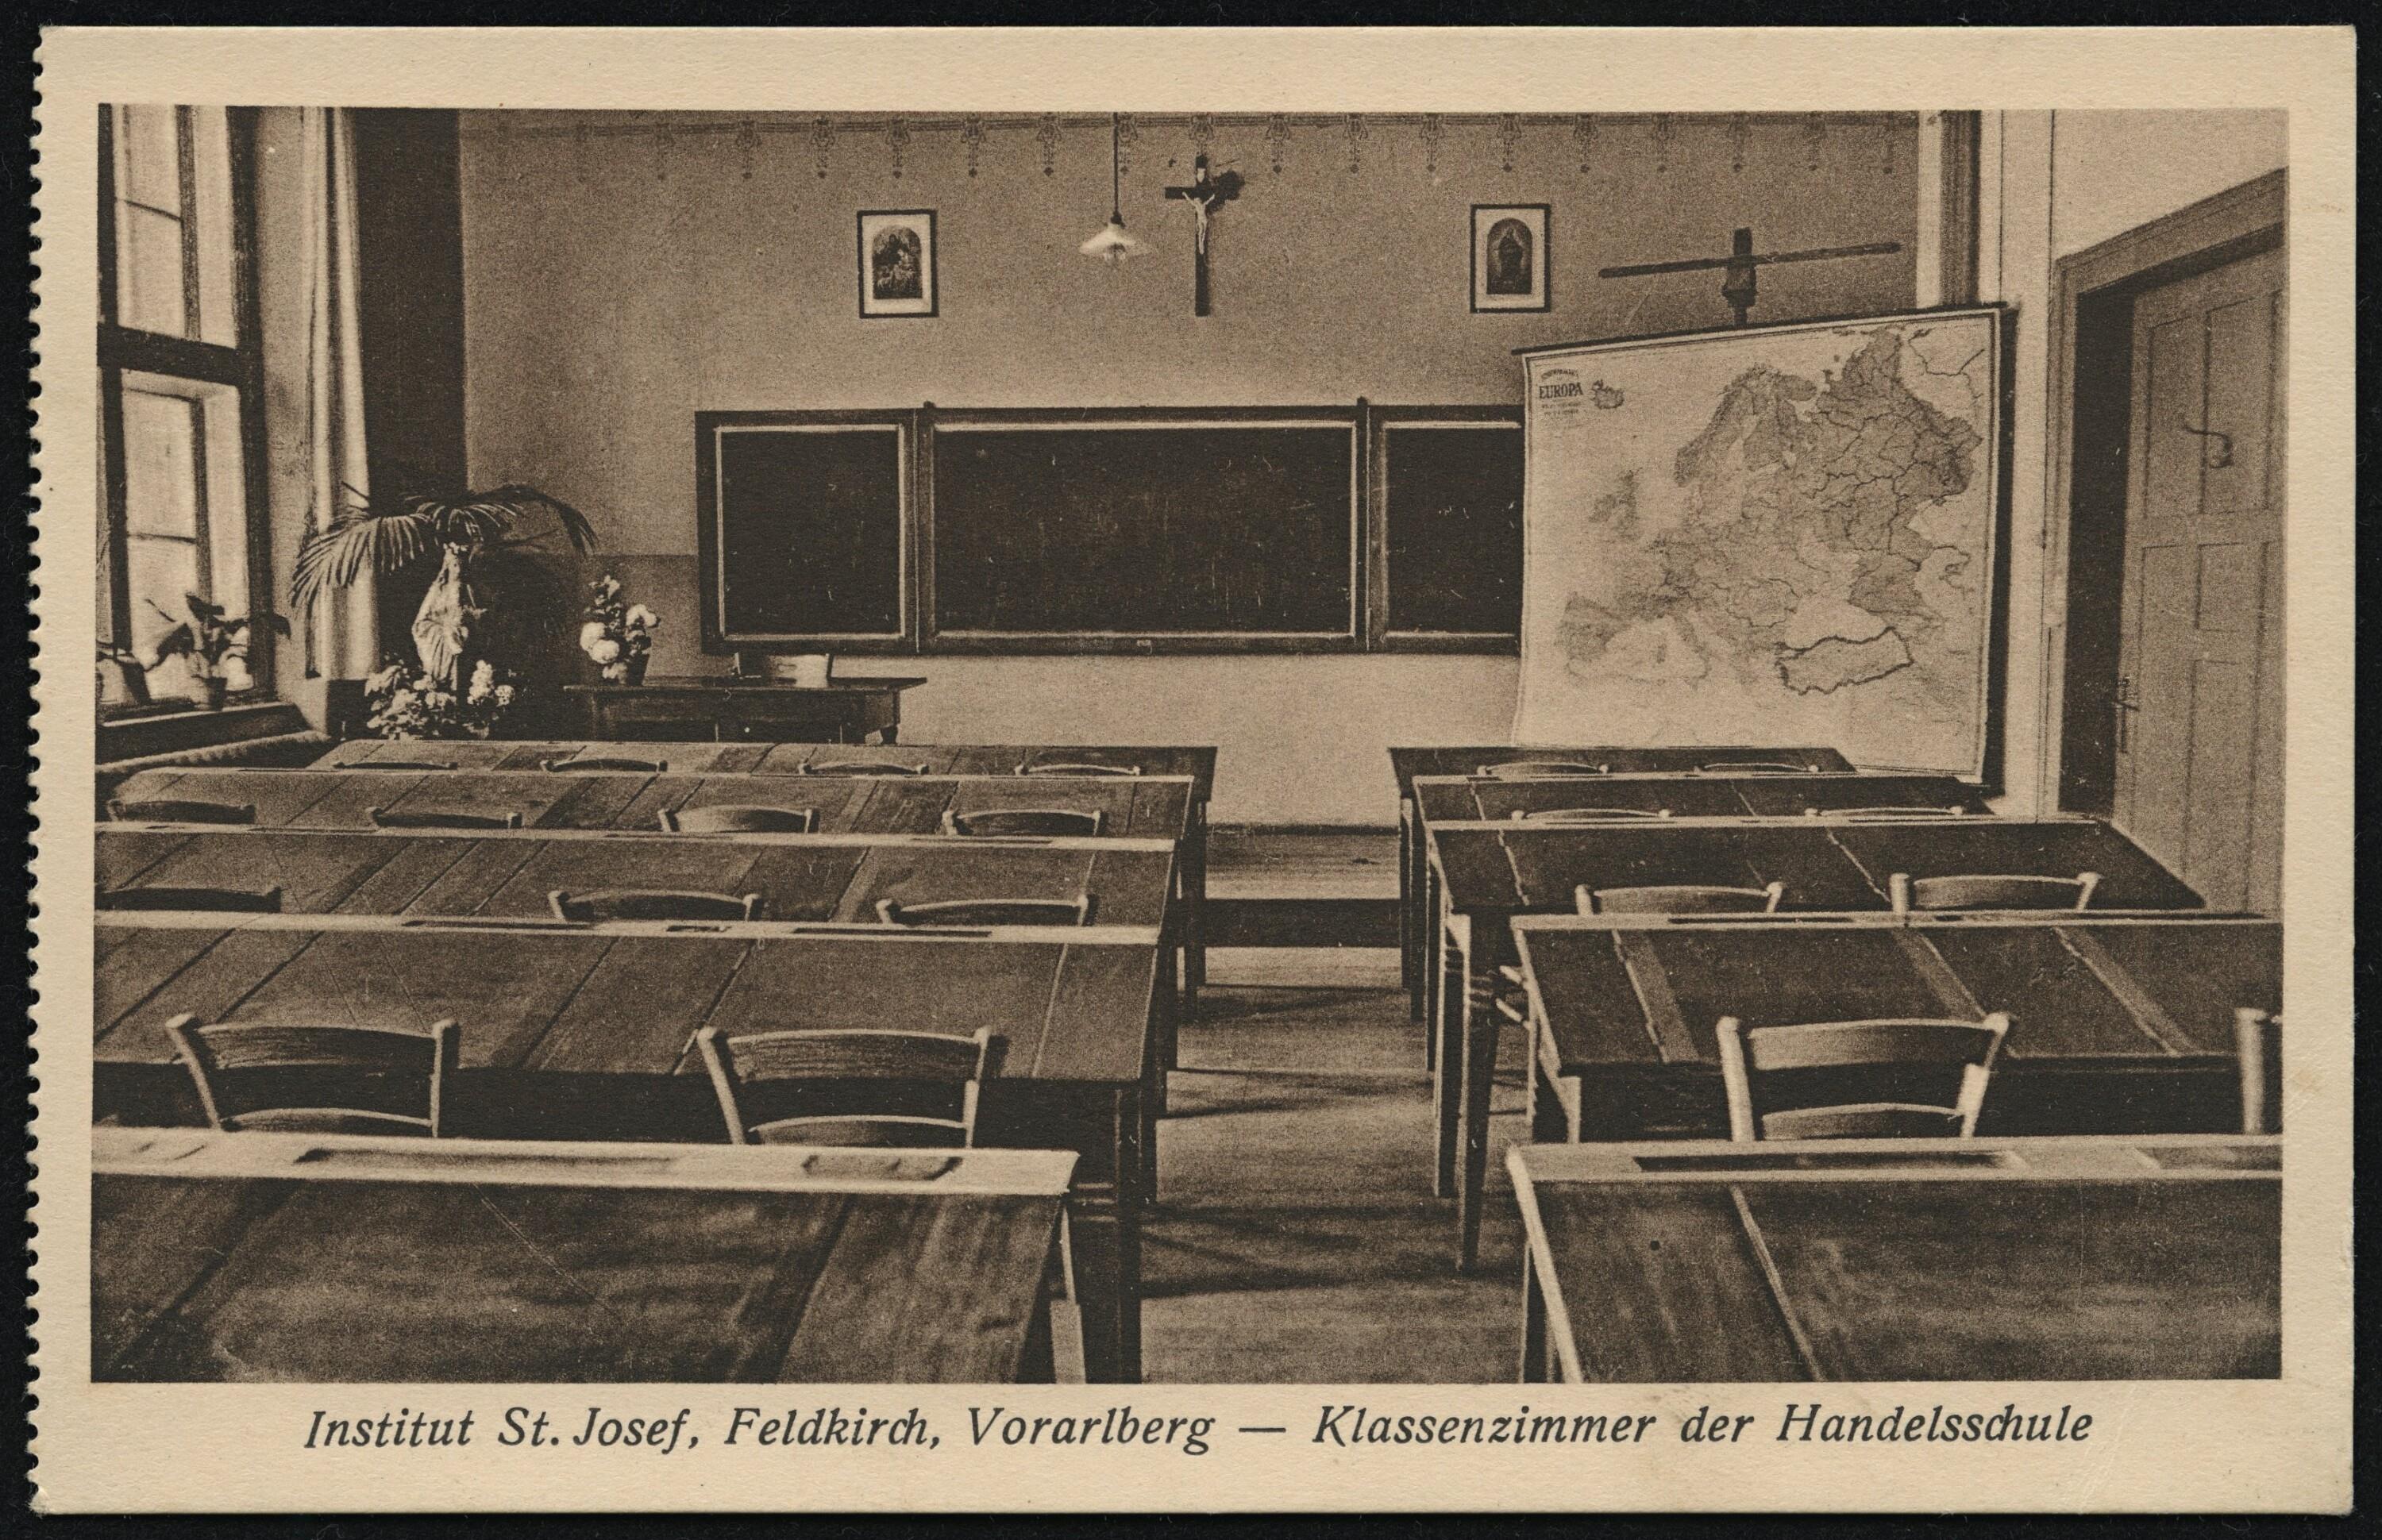 Institut St. Josef, Feldkirch, Vorarlberg - Klassenzimmer der Handelsschule></div>


    <hr>
    <div class=